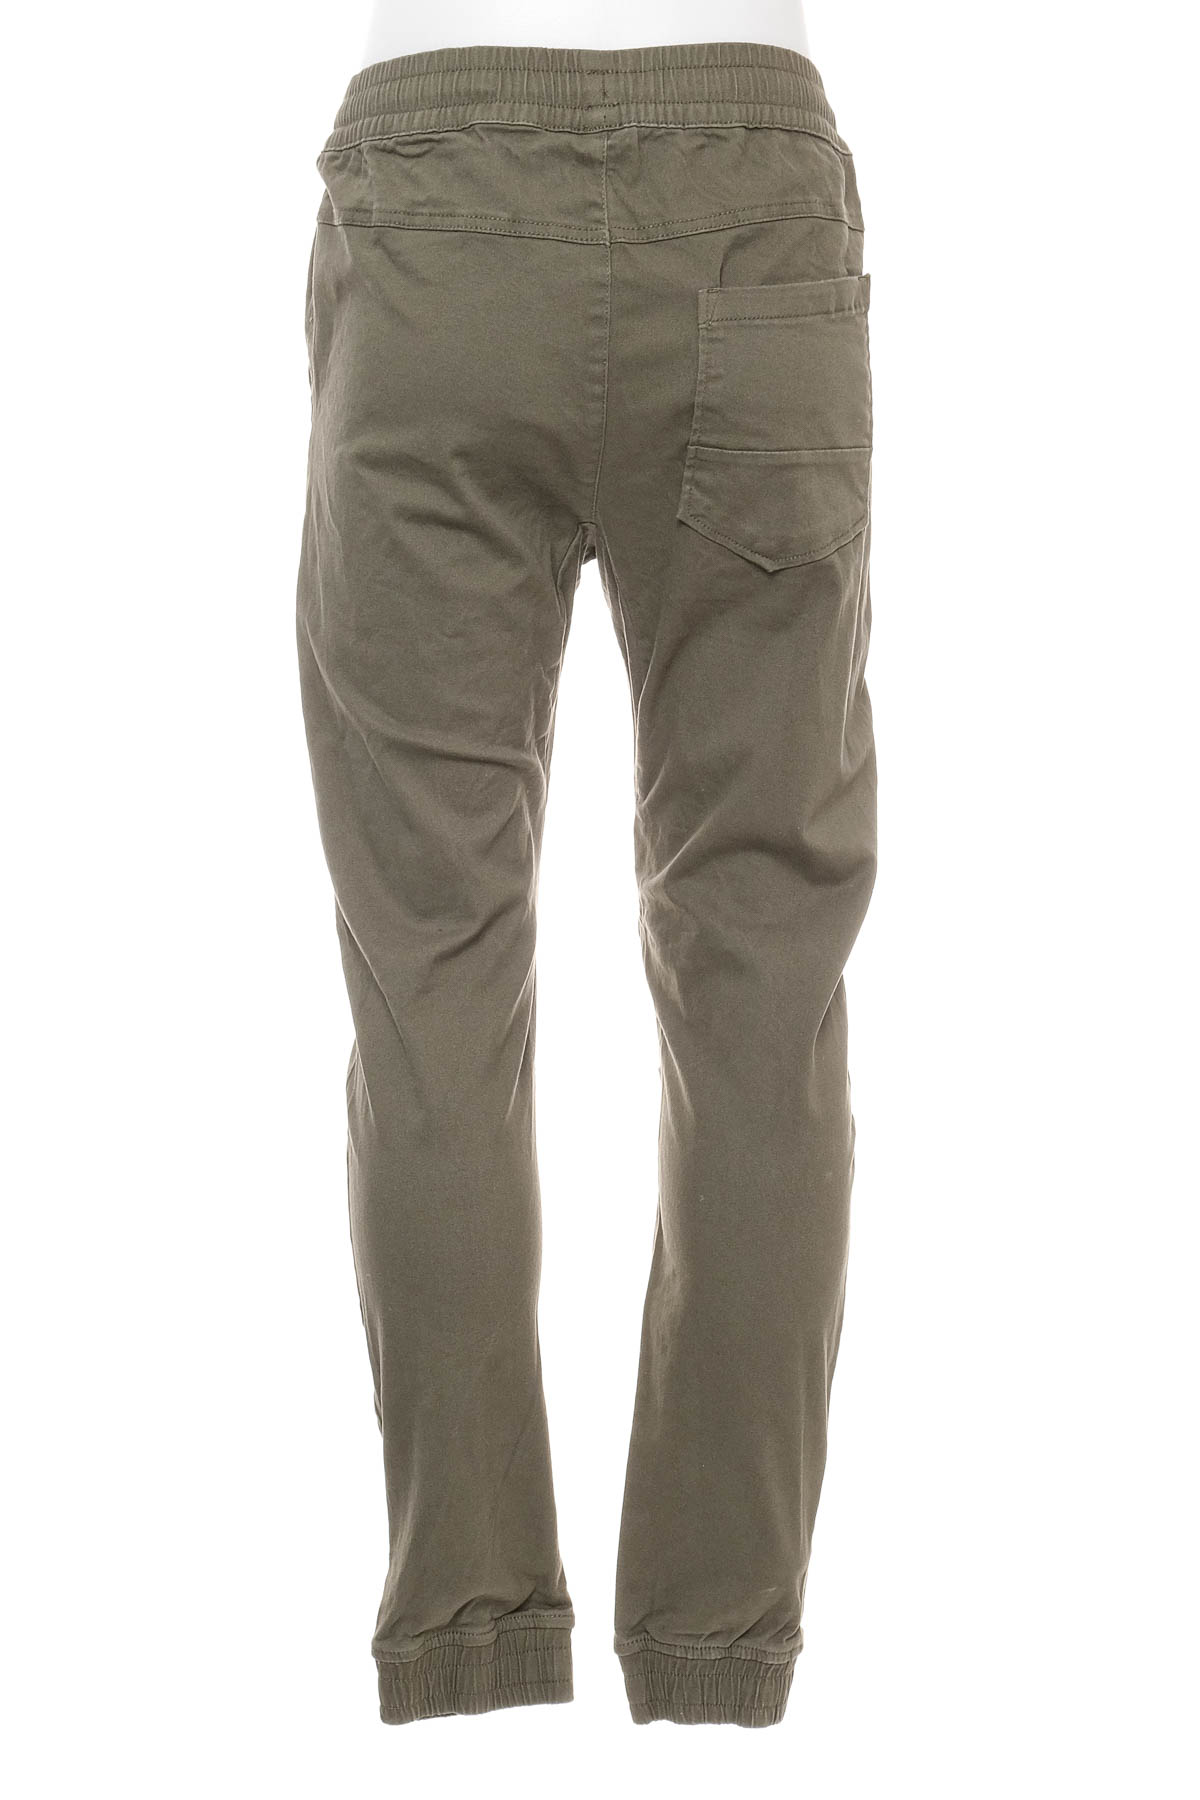 Pantalon pentru băiat - Target - 1